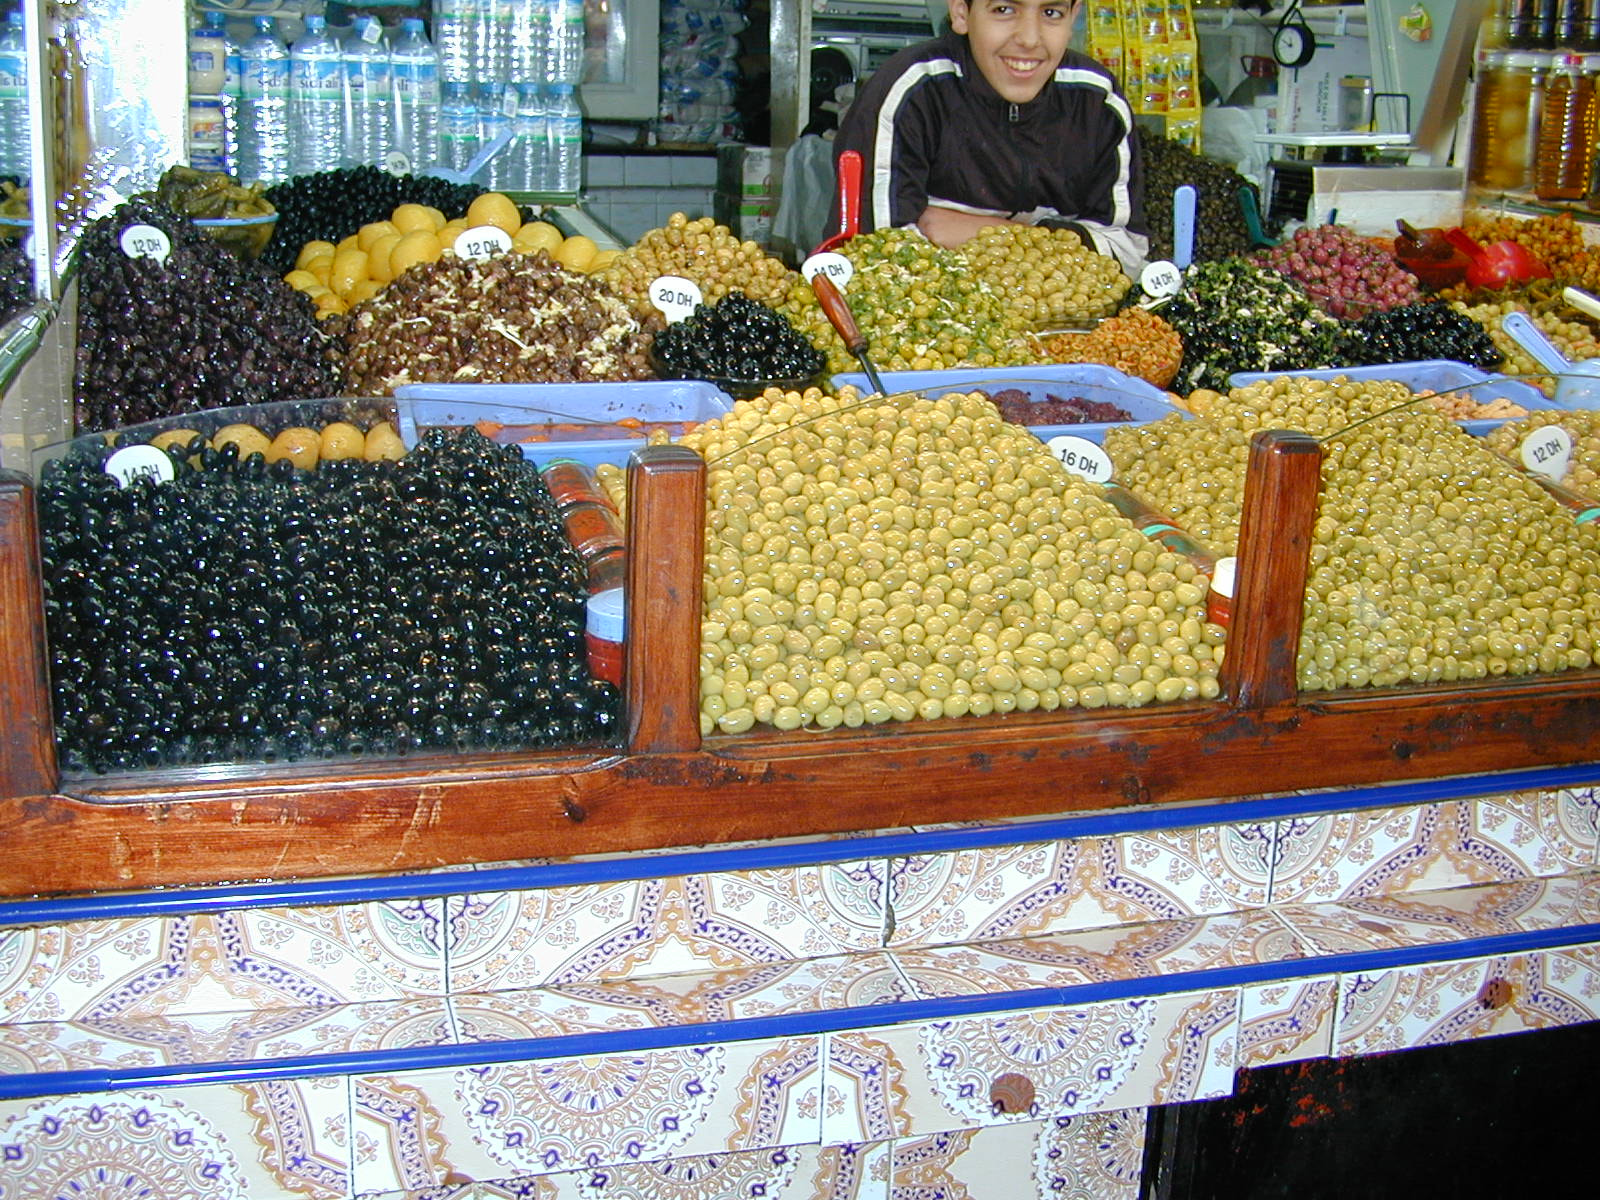 Nikon E950 sample photo. Moroccan market photography